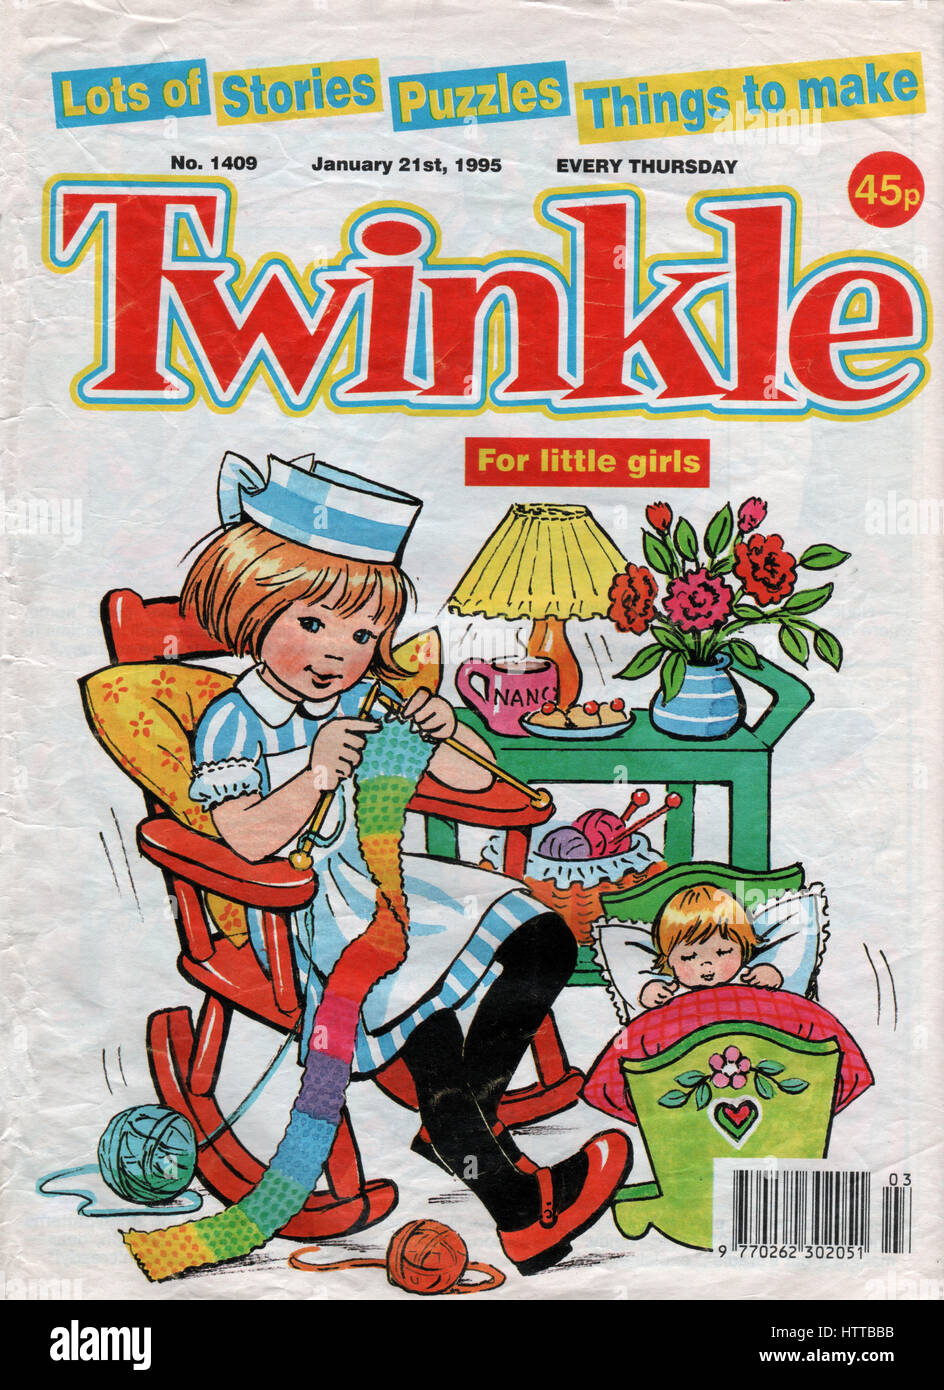 'La bande dessinée Twinkle papier photo spécialement pour les petites filles" est une publication hebdomadaire et a duré de 1968 à 1999 et a été publié par D. C. Thomson Banque D'Images